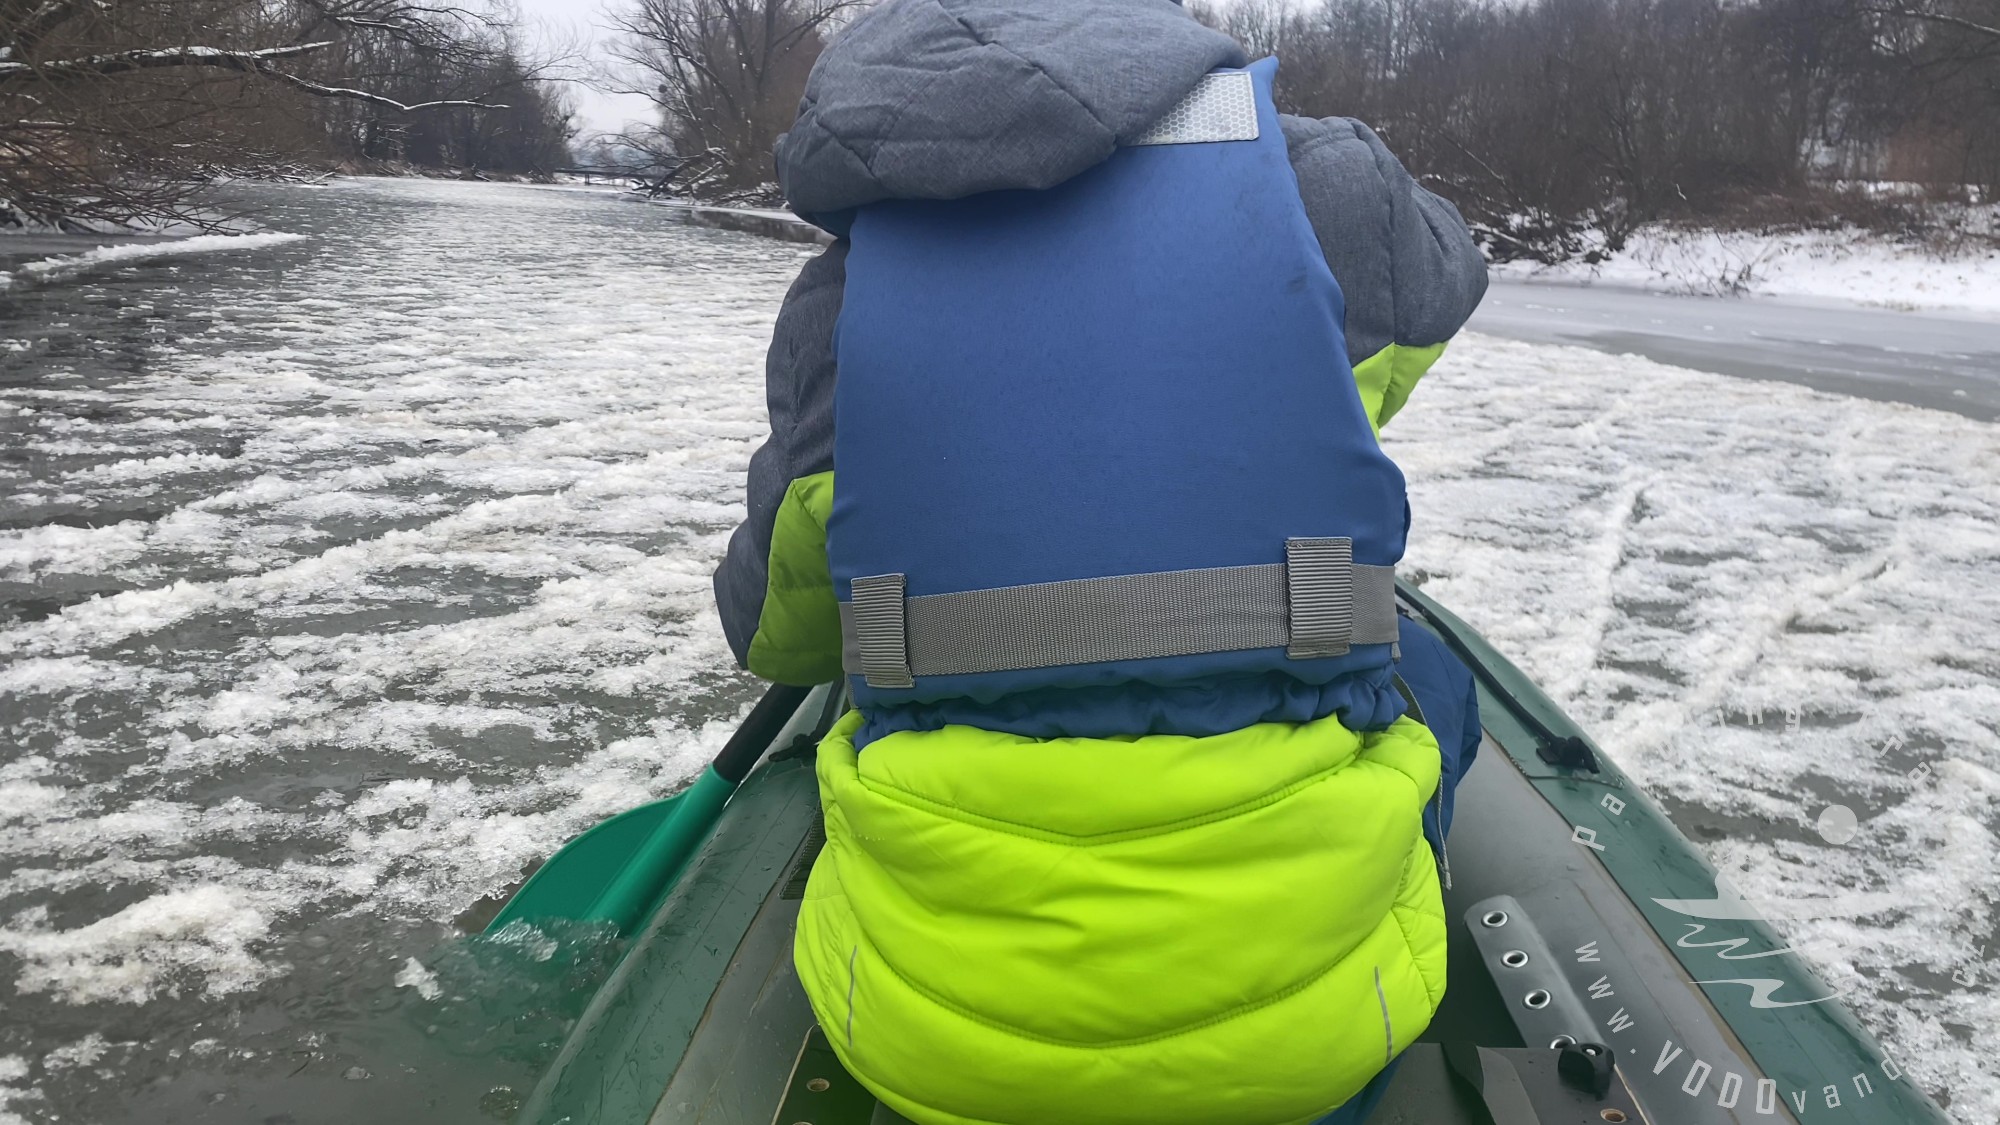 Na kánoi po zamrzlé řece s ledoborcem | Pelmeně | Gumotex Pálava